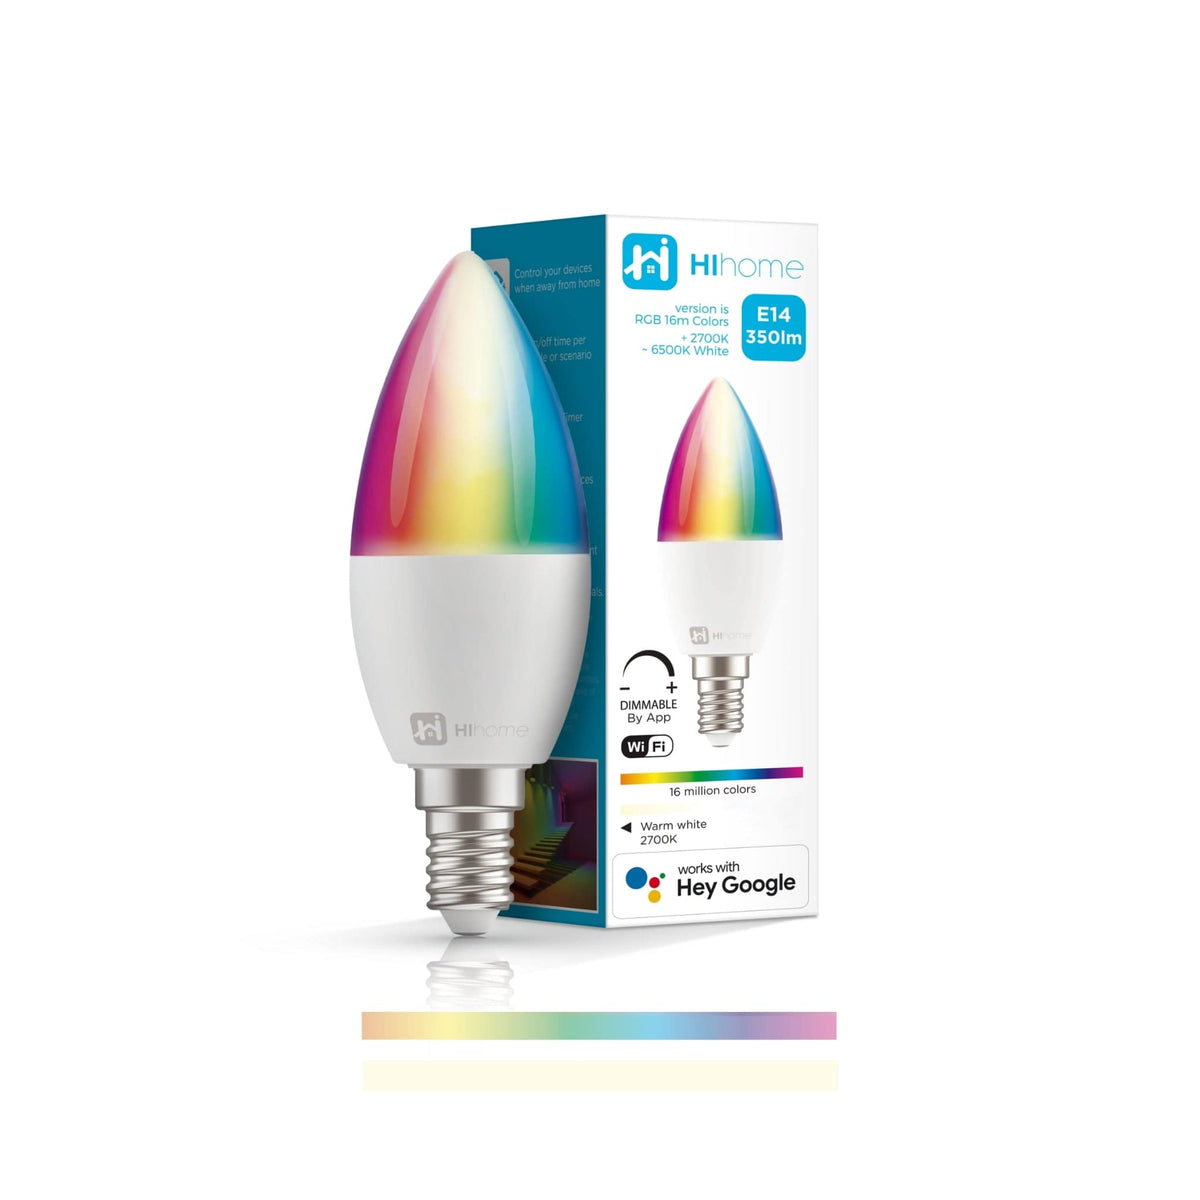 Hihome Smart LED WiFi RGB + Varm hvid (2700K) Candle E14